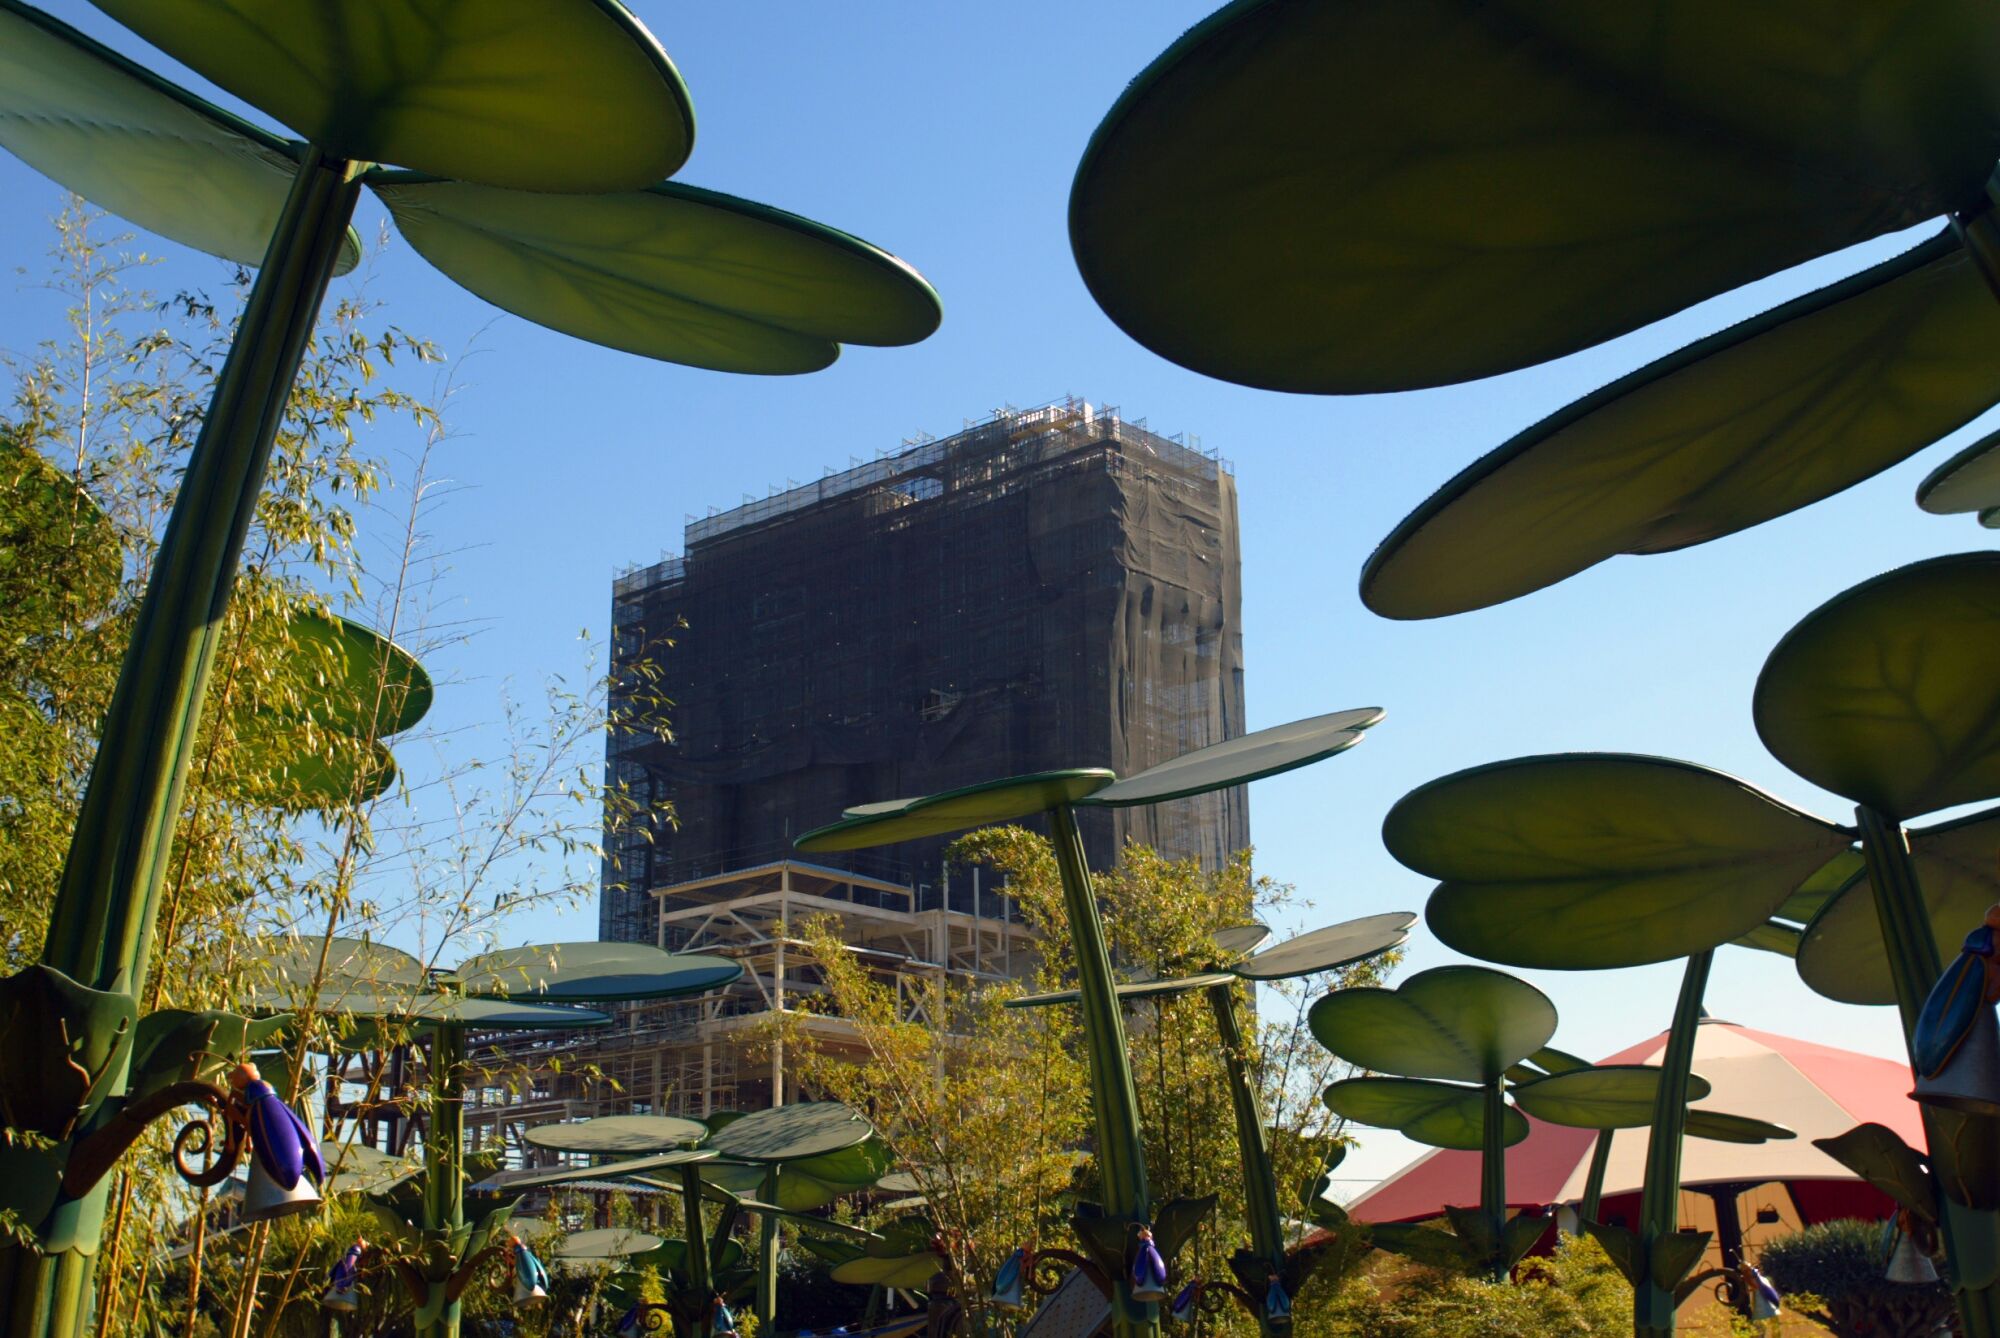 Dev bitkilerin arasından görülen, inşaat ağına sarılı uzun bir yapının fotoğrafı.